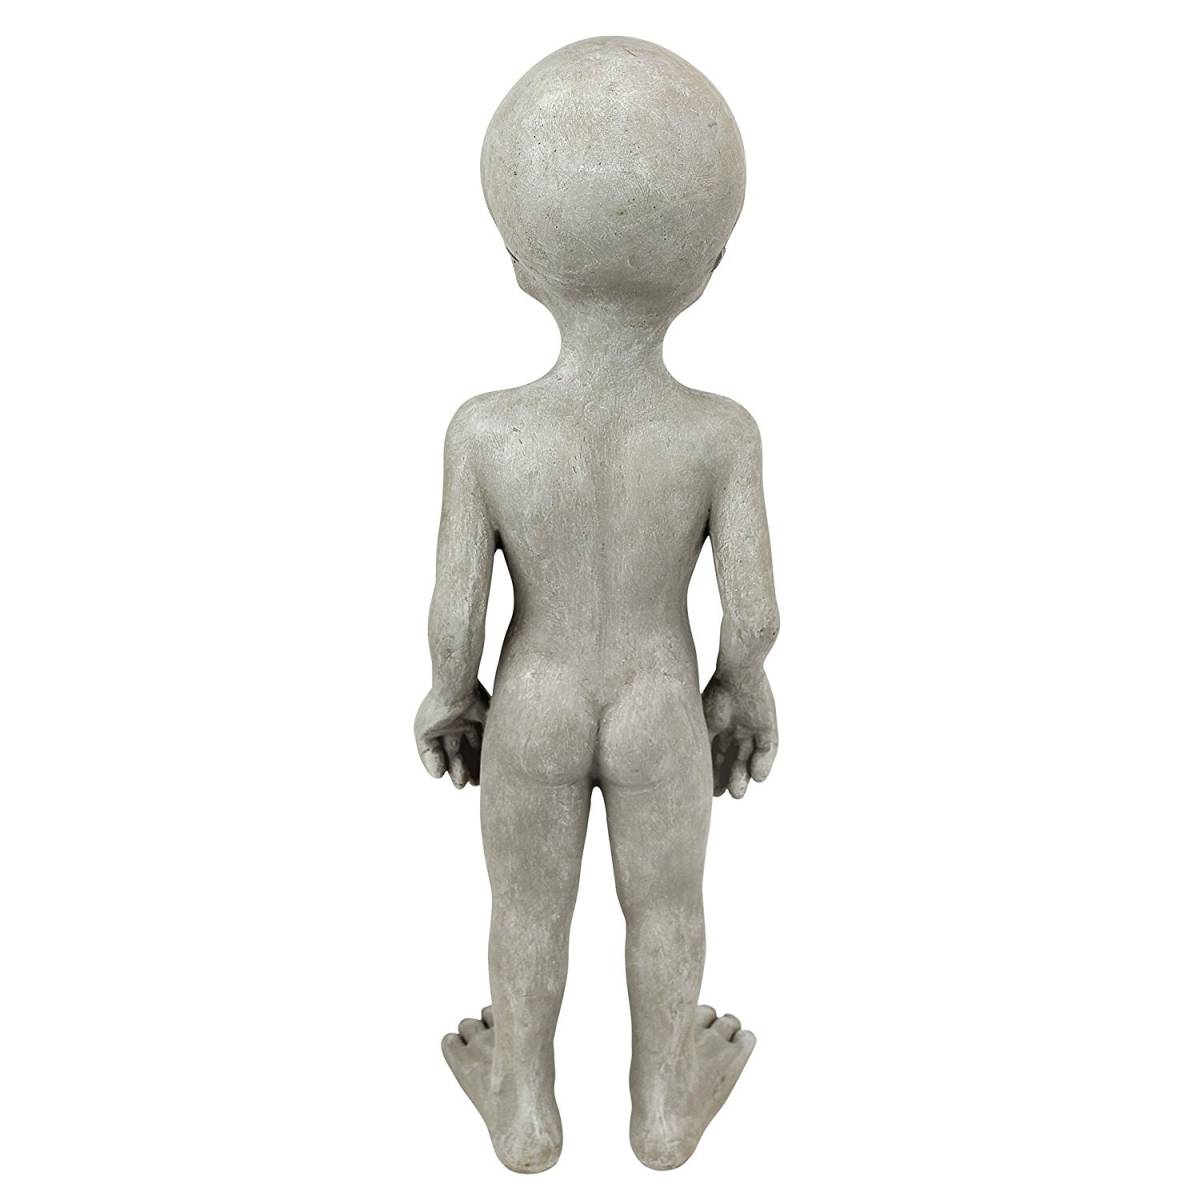 35cm Чужой серый ( маленький ) интерьер скульптура украшение произведение искусства декортивный элемент украшение roz well UFO пришелец смешанные товары фигурка . акцент модель мелкие вещи 